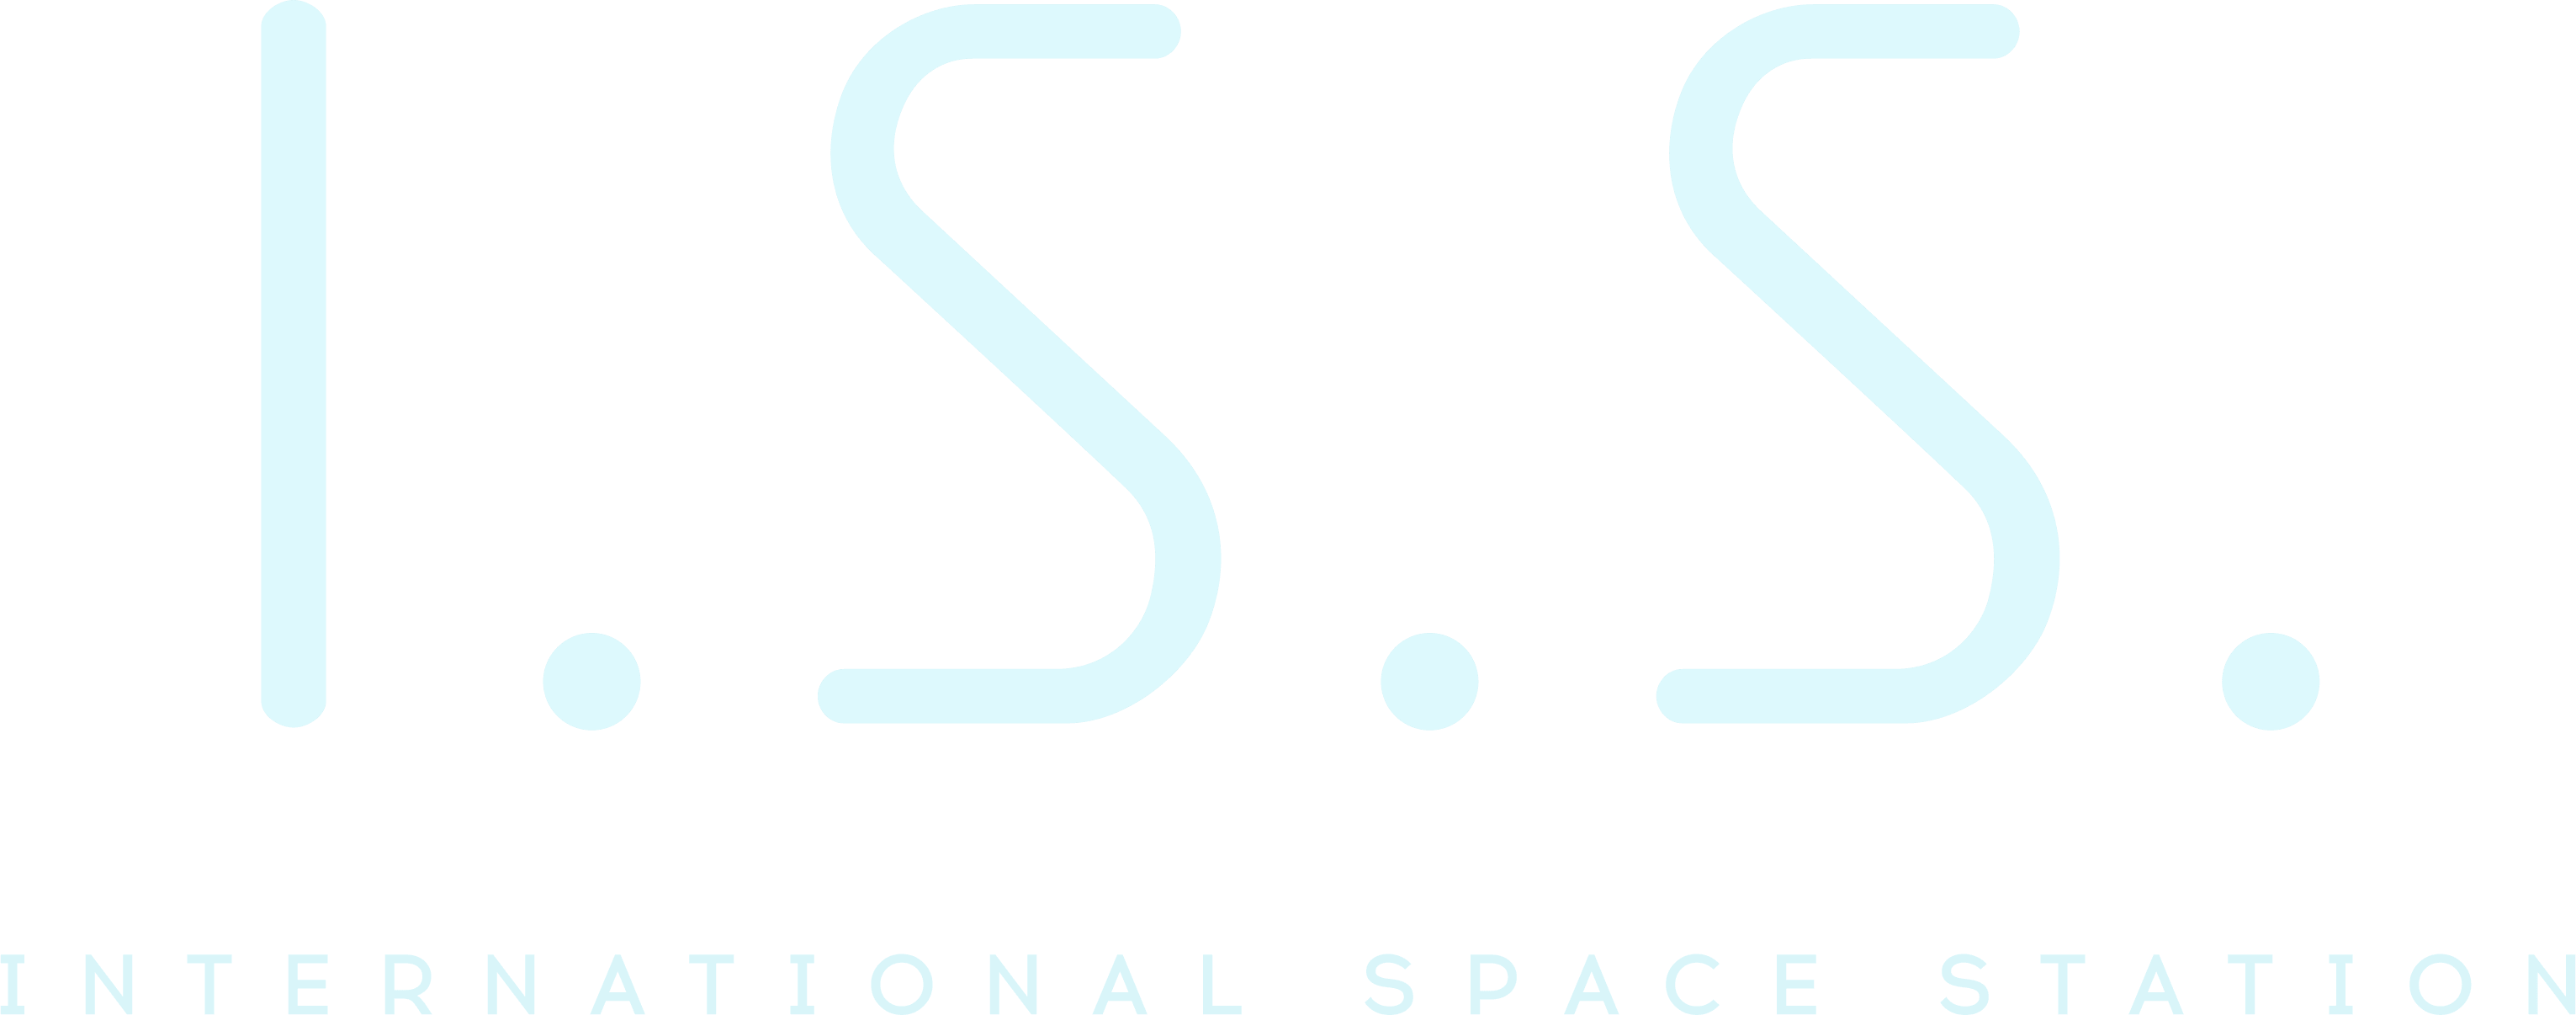 I.S.S. logo